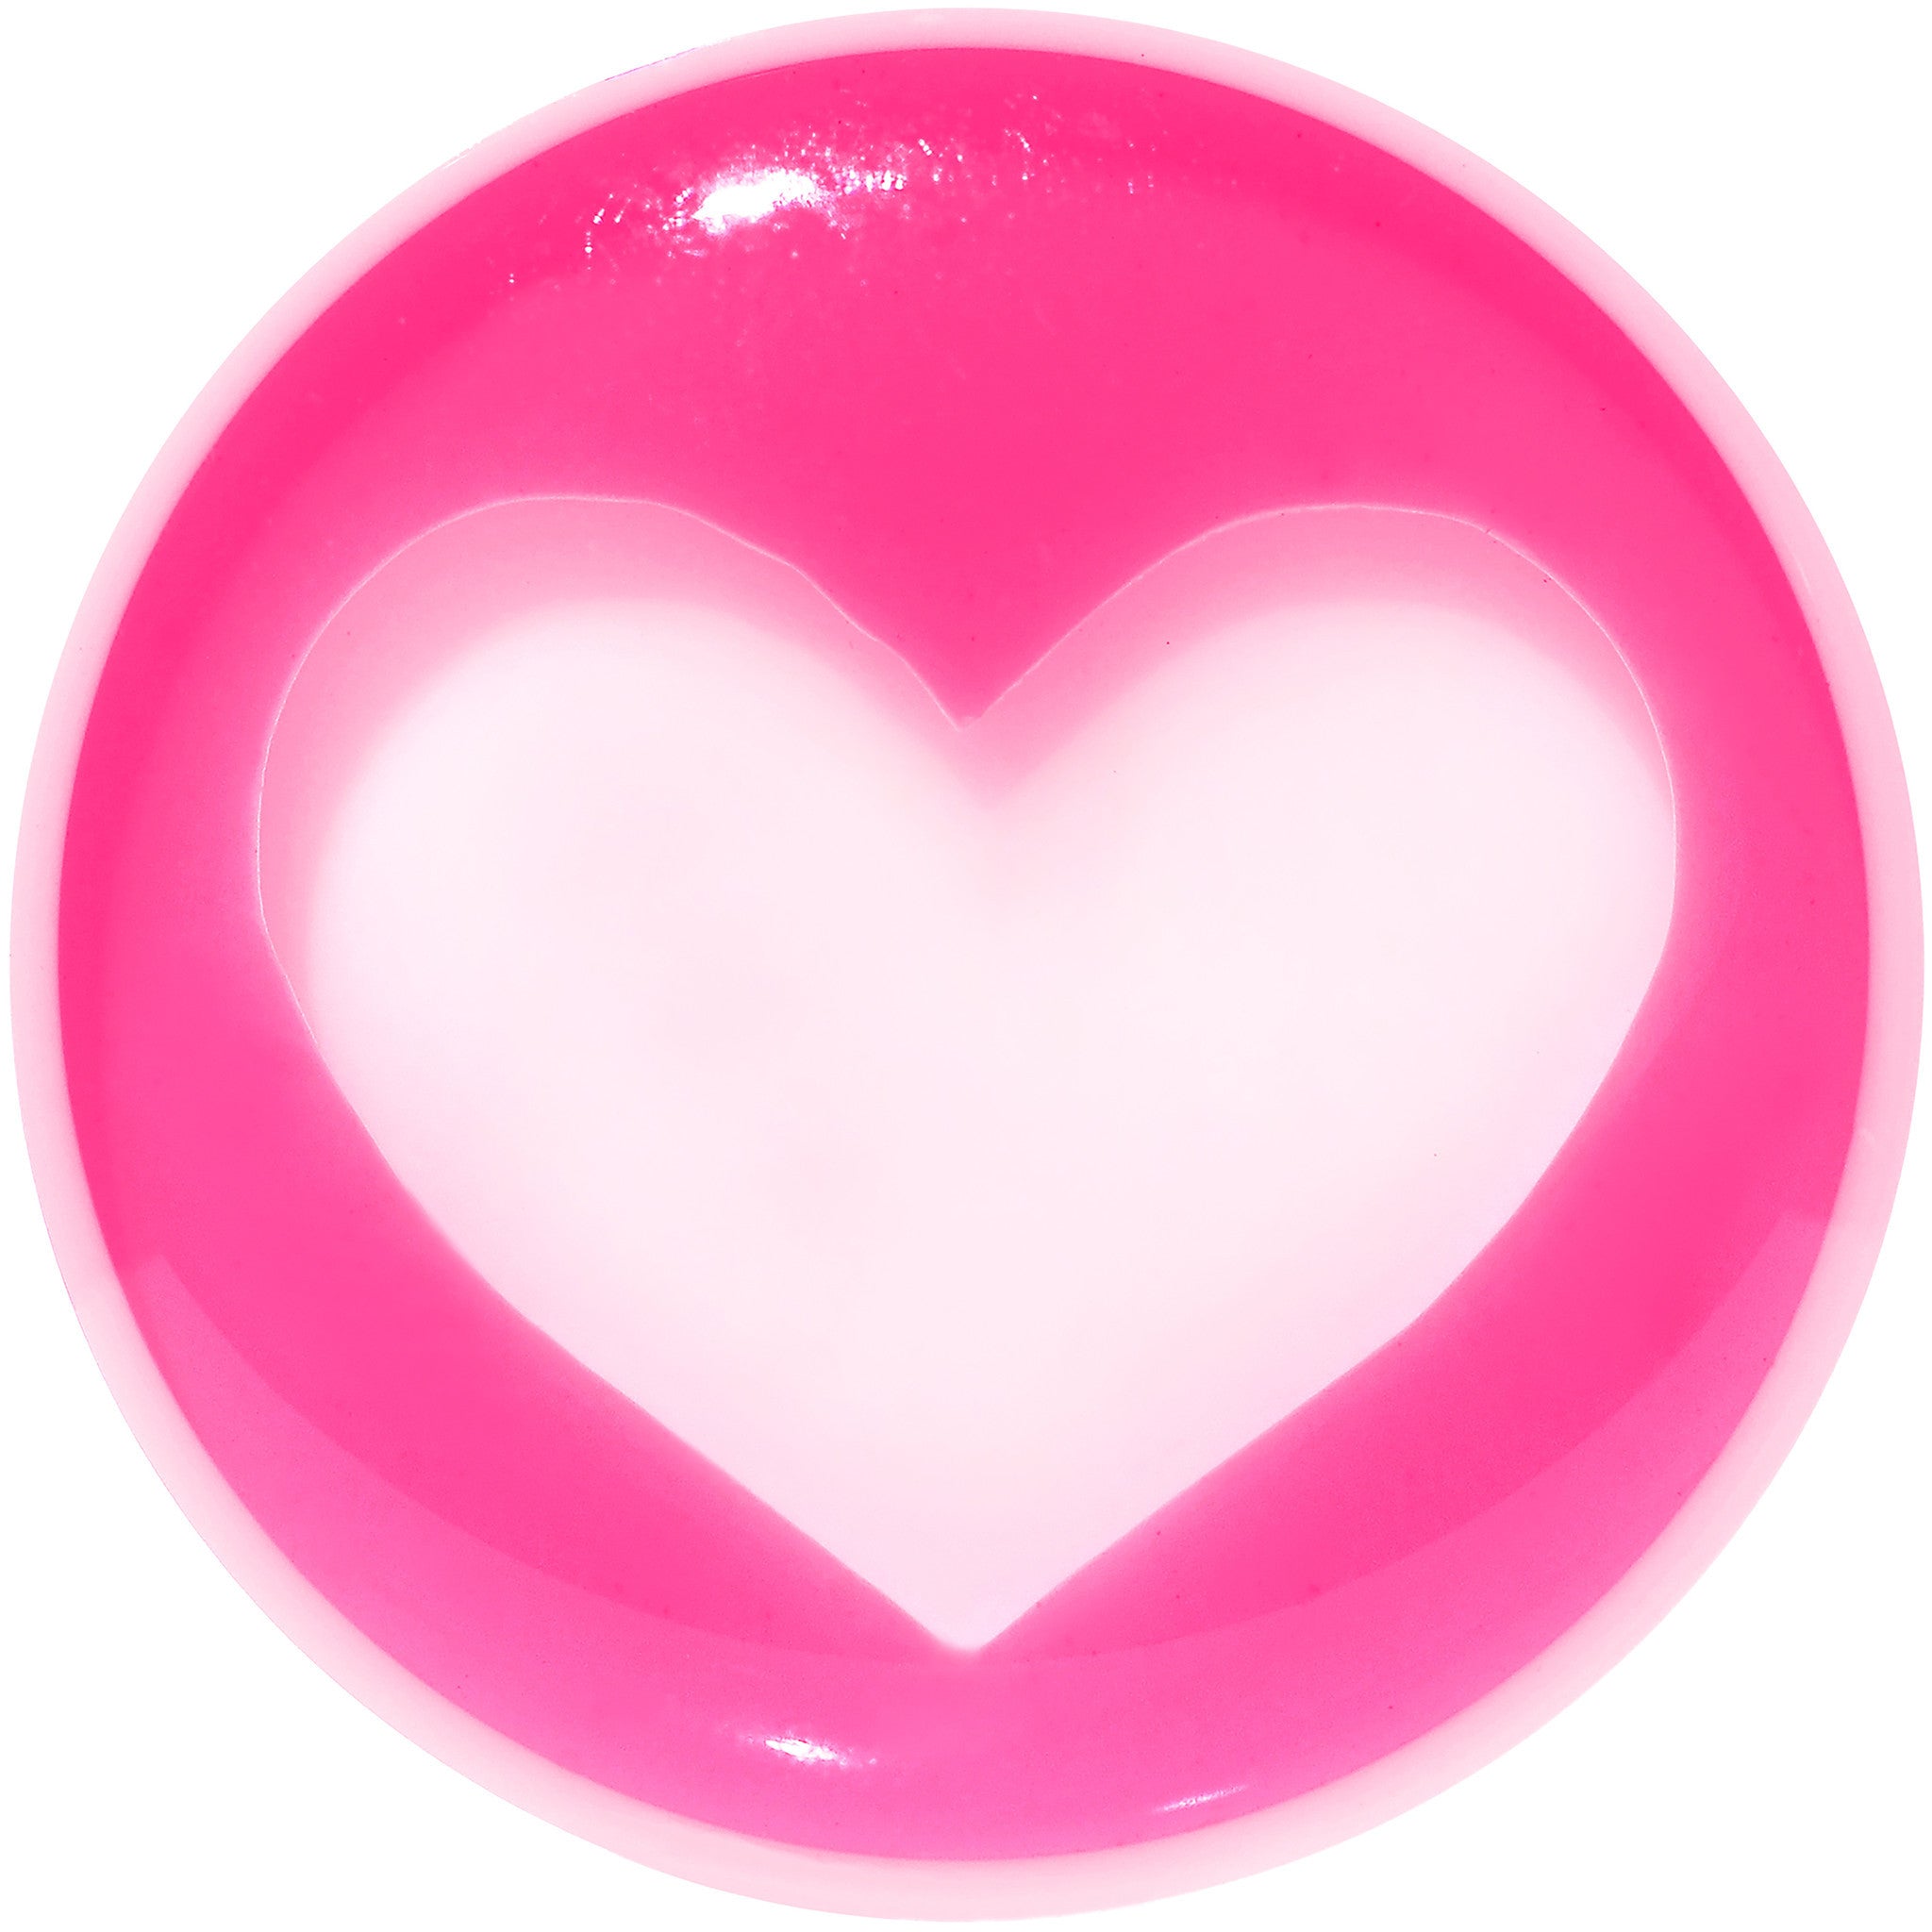 20mm White Pink Acrylic Adoring Heart Saddle Plug